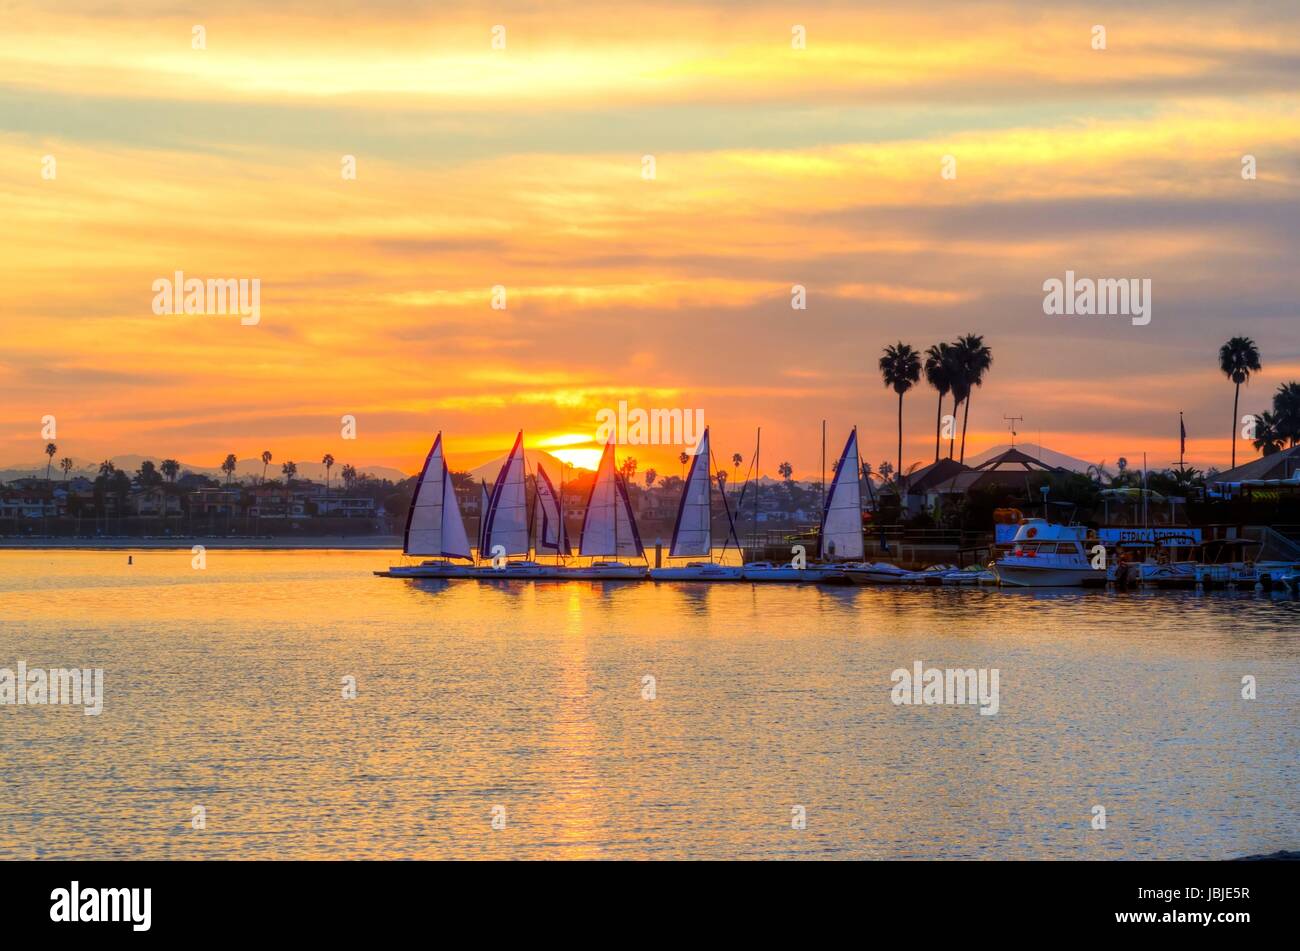 Le lever du soleil sur la baie de voile à Mission Bay sur la plage du Pacifique à San Diego, Californie aux États-Unis d'Amérique. Une vue sur les palmiers, voiliers et belle baie d'eau salée au coucher du soleil. Banque D'Images